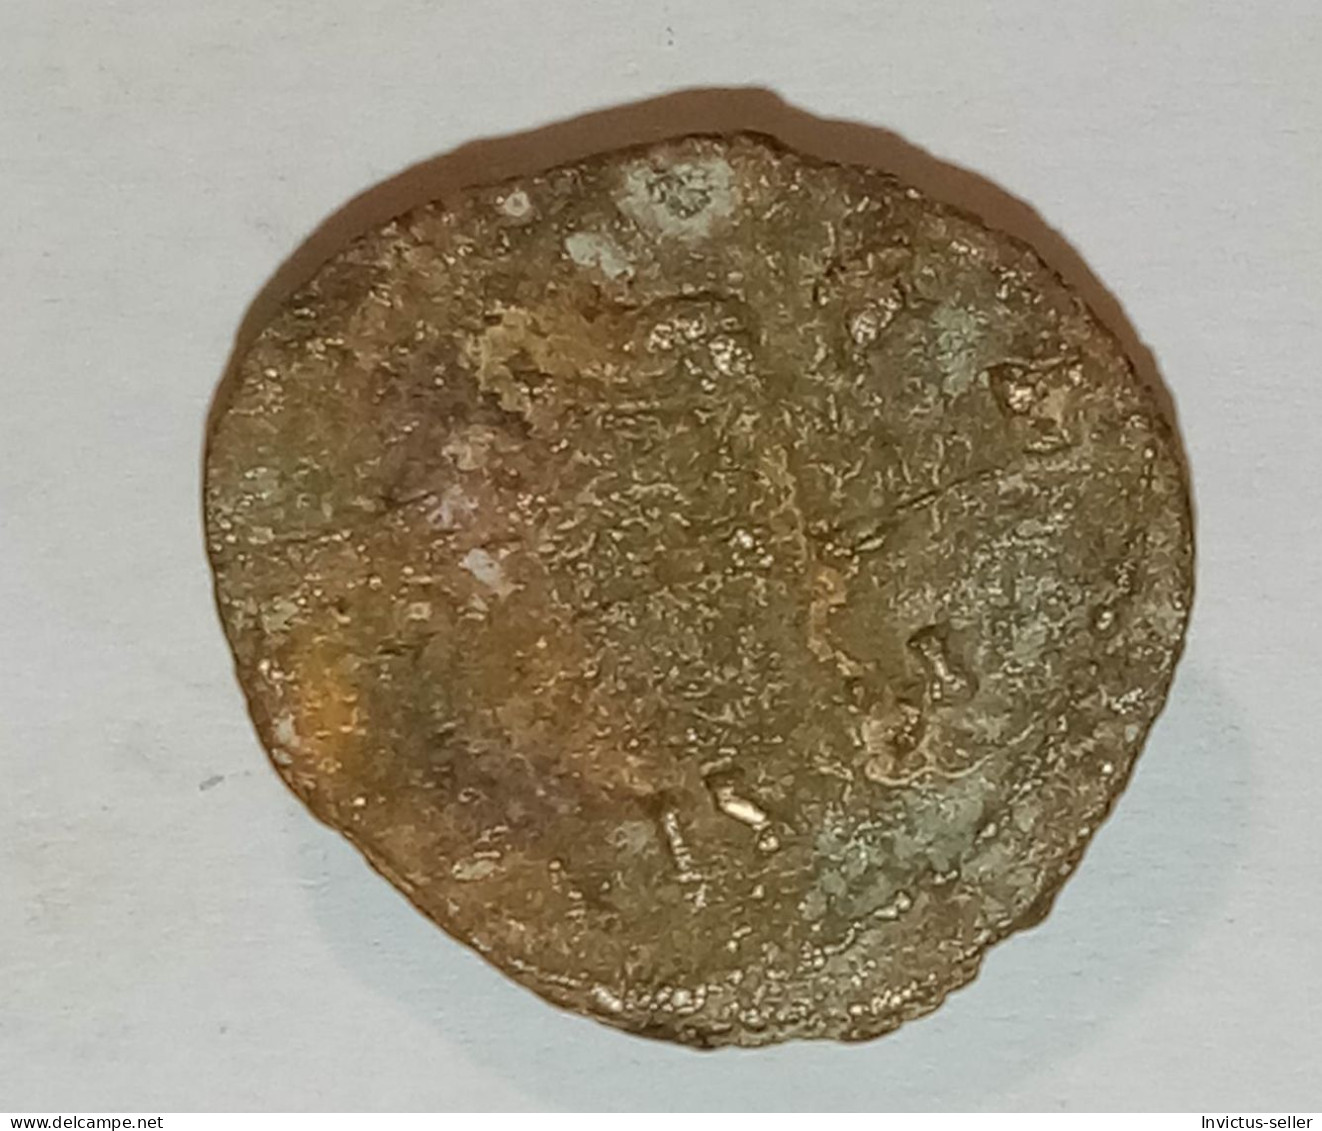 Moneta romana imperatore Claudio il Gotico 268-270 -  ANCIENT ROMAN COIN  IMPERATOR CLAUDIUS GOTHICUS - COD 9